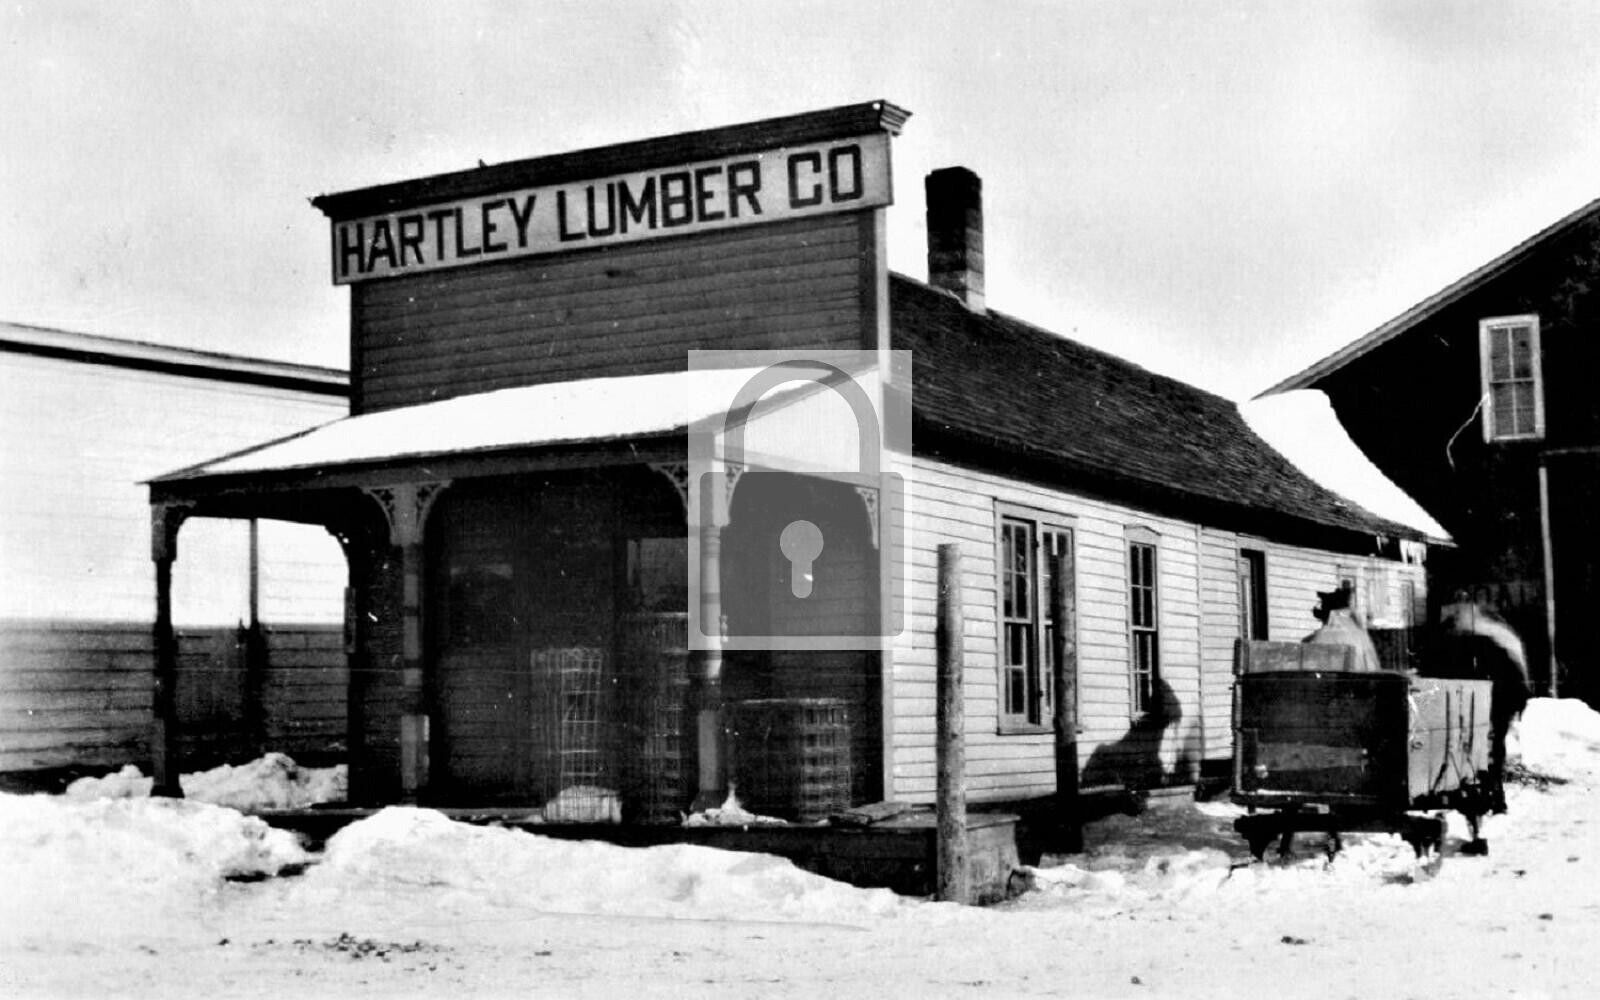 Hartley Lumber Co Baldwin Kansas KS Reprint Postcard